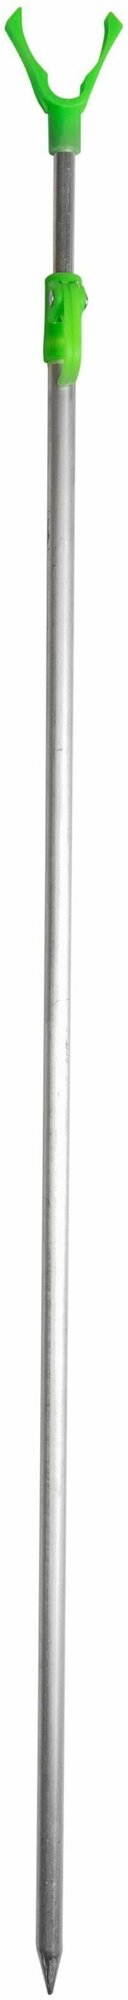 Подставка для удочки тип 2 - ручка (телескоп 1.2м аллюминий пластиковый стопор-ручка)